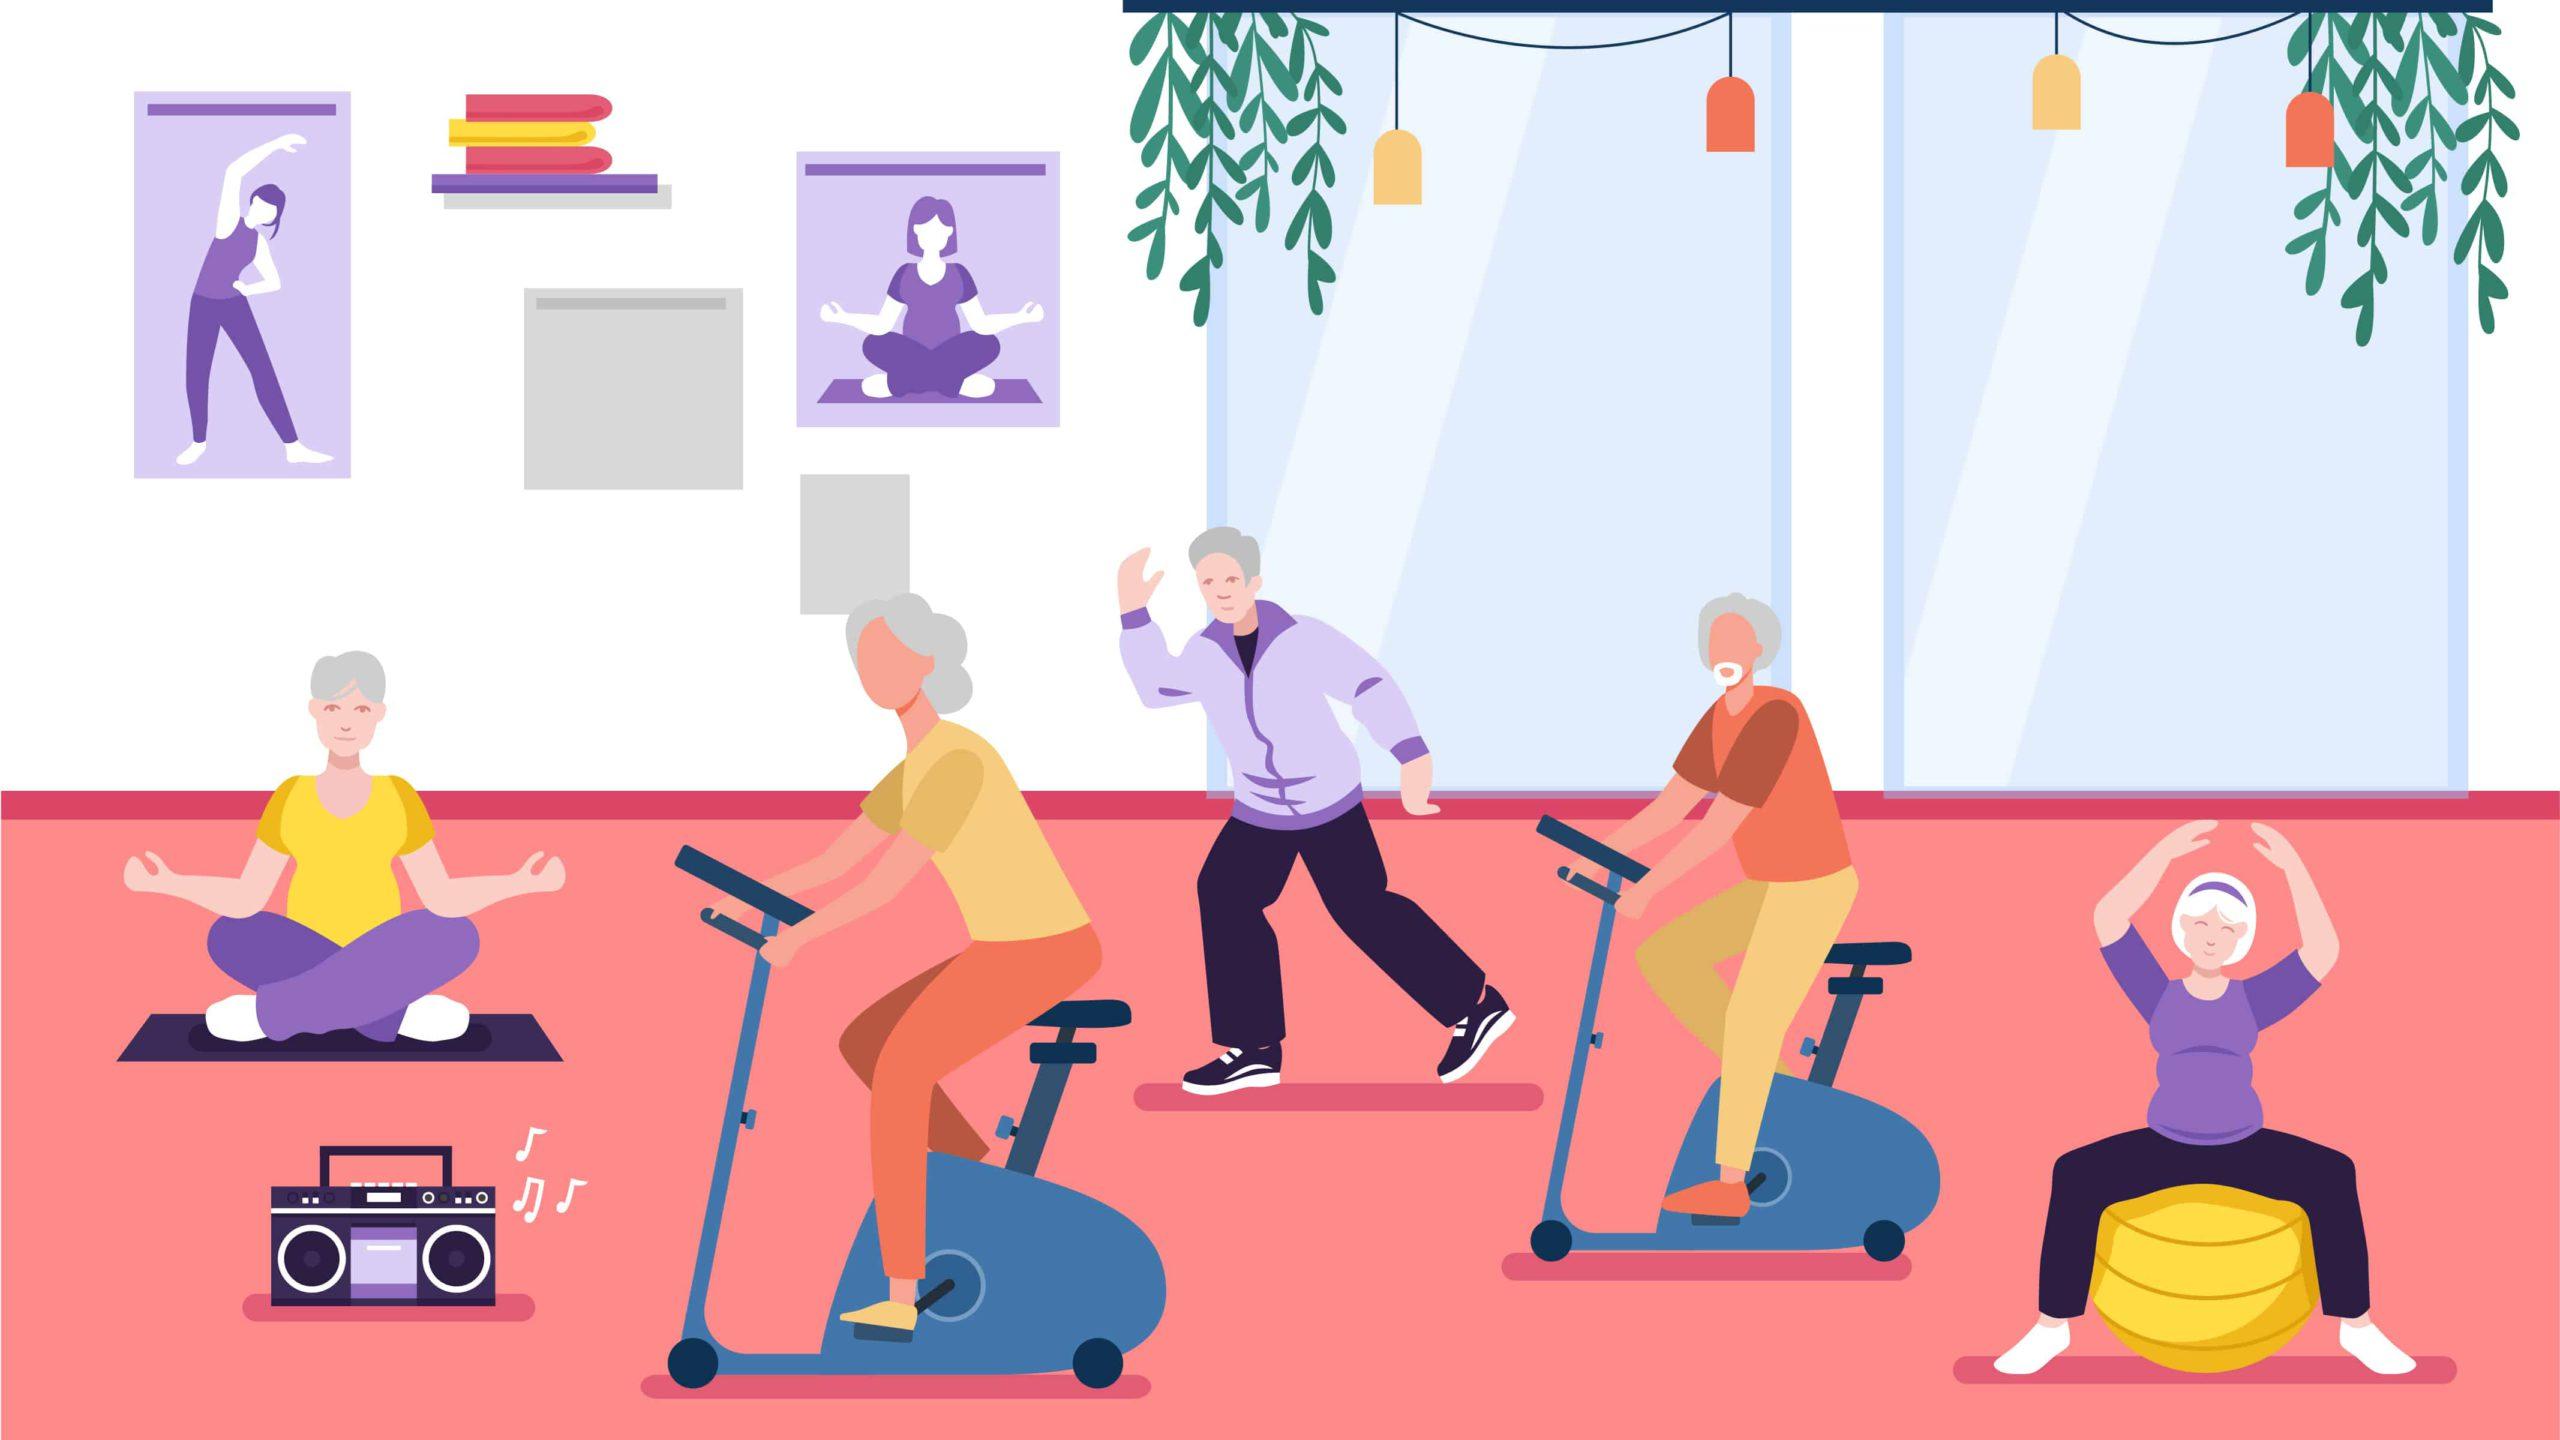 https://www.boomershub.com/blog/wp-content/uploads/2021/11/Finding-Fitness-Classes-for-Seniors-01-1-scaled.jpg